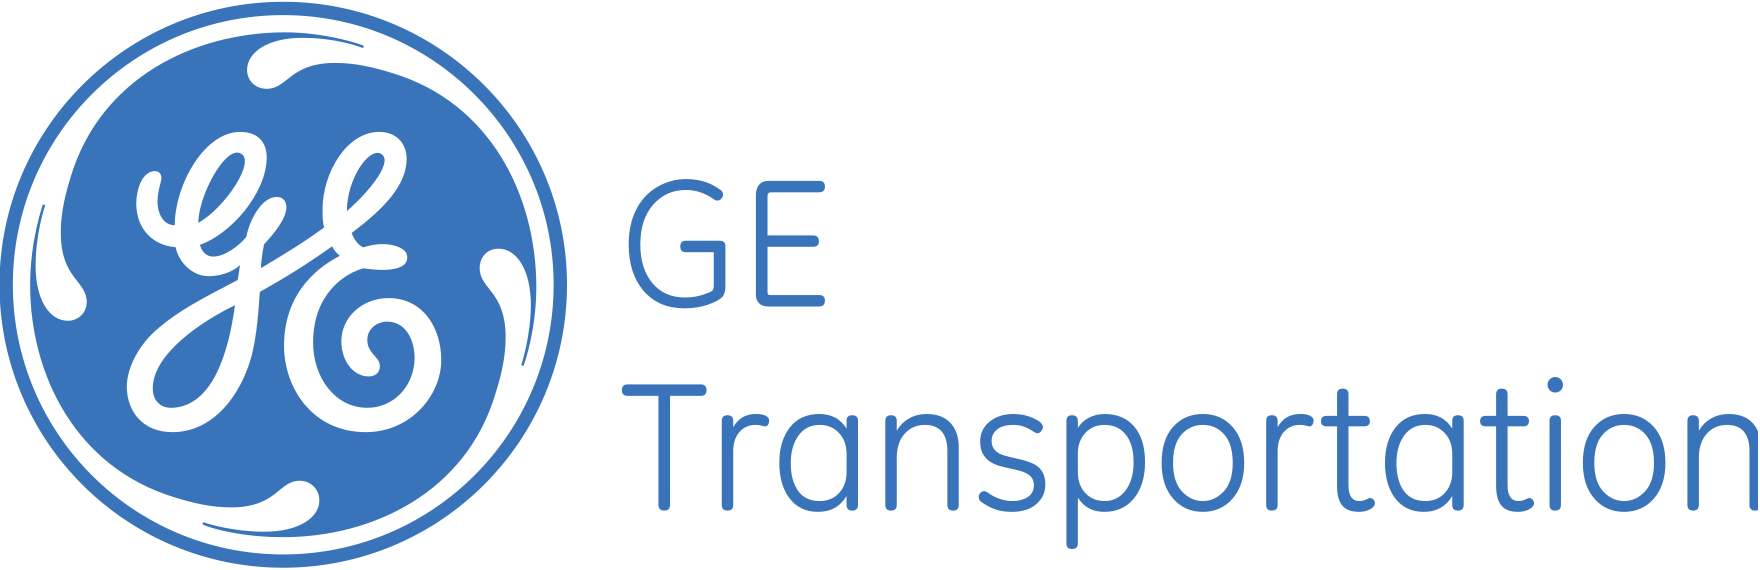 GE_TRansportation_Logo.png